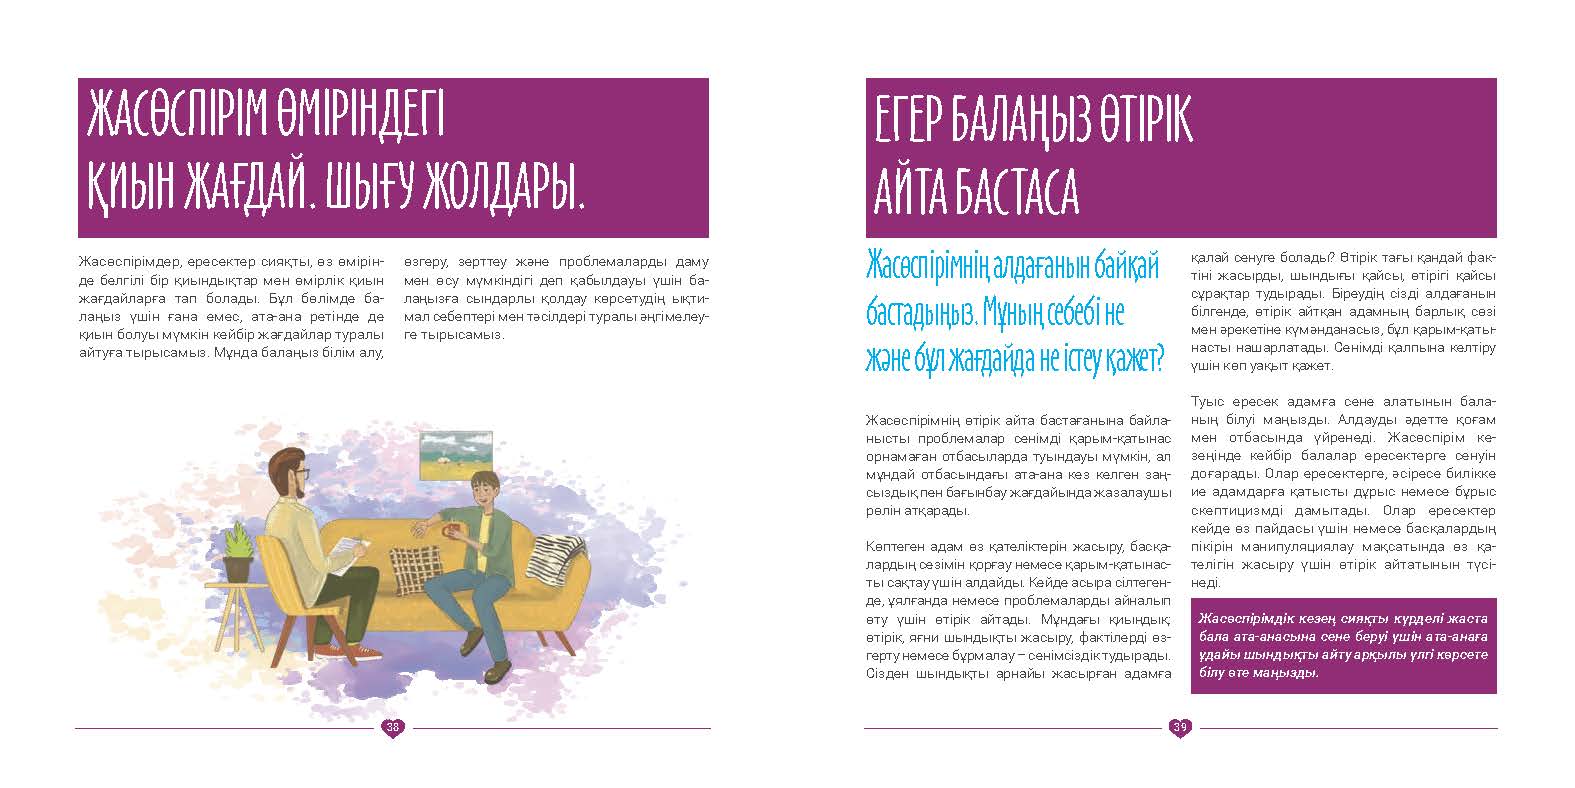 EVAC brochure KAZ (20).jpg